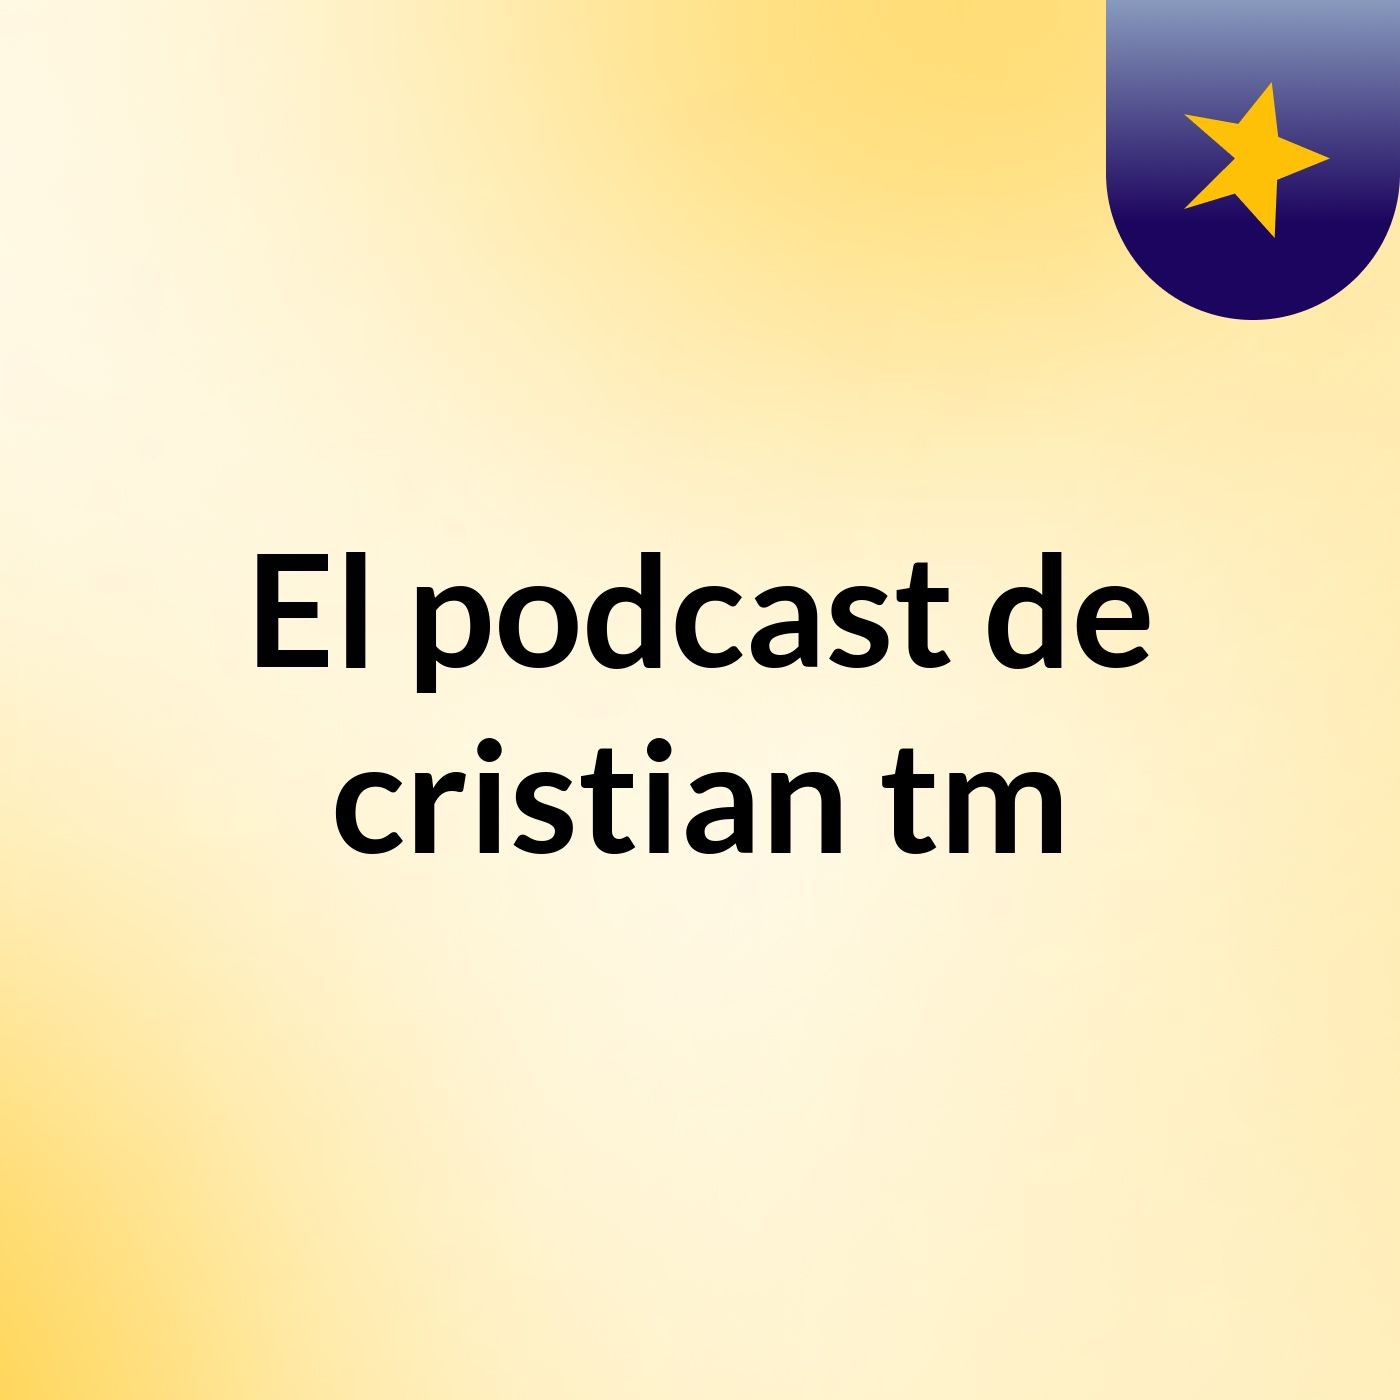 Episodio 2 - El podcast de cristian tm